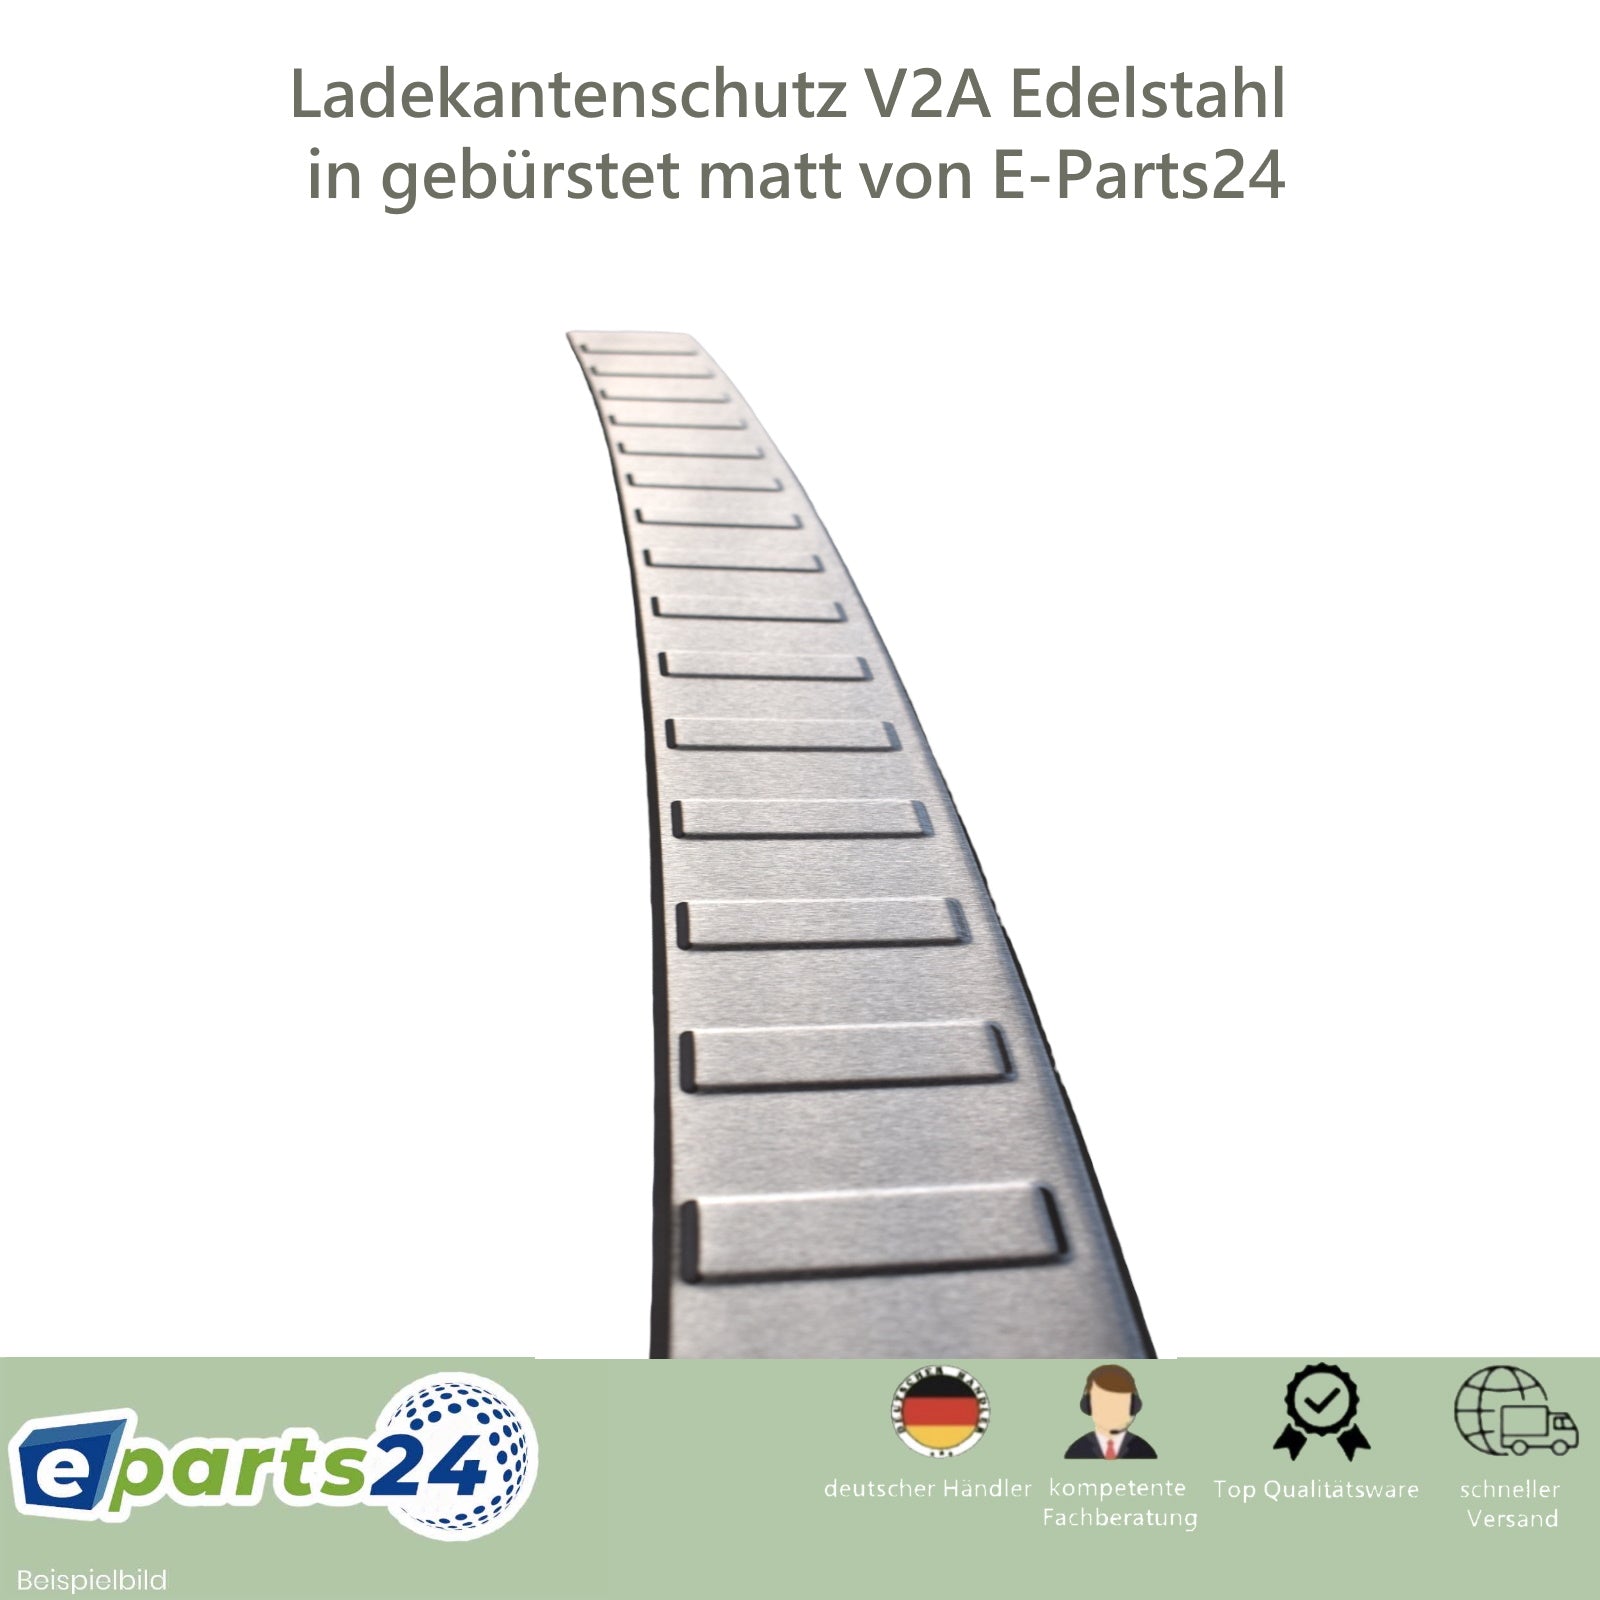 8W Kombi E-Parts24 A4 B9 Avant Ladekantenschutz – Audi 2015-2019 für geb Edelstahl